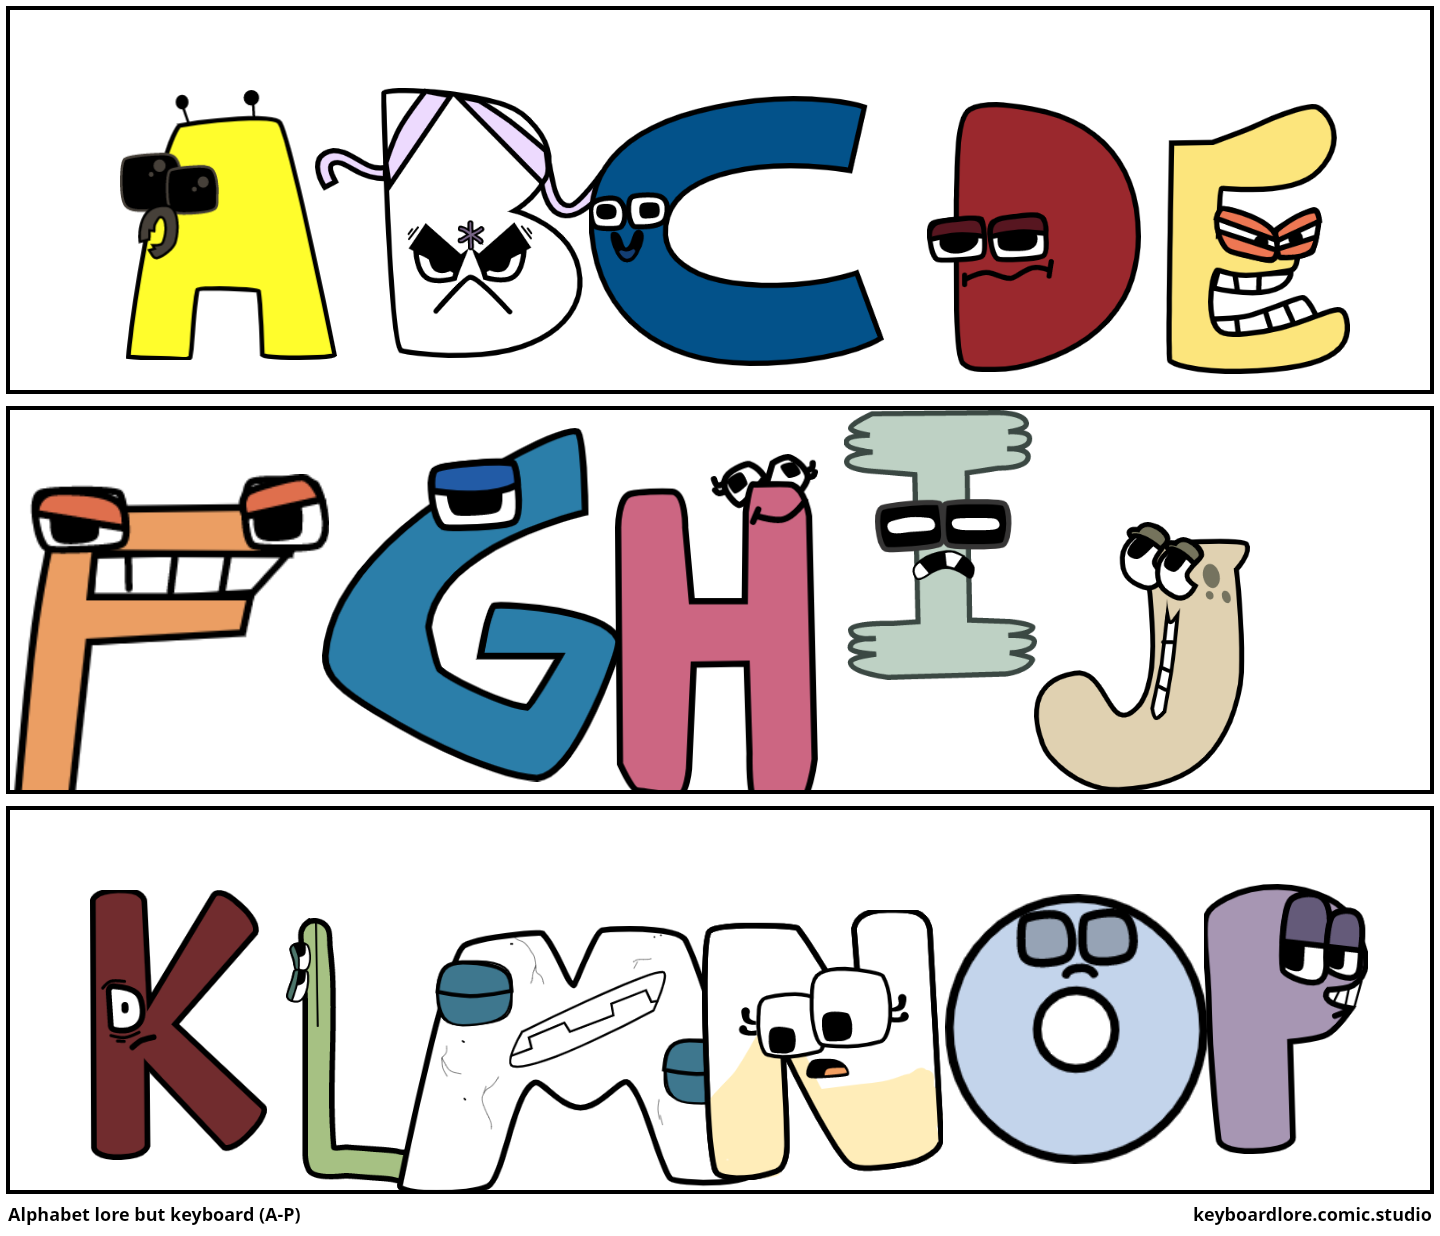 alphabet lore at the comic studio 